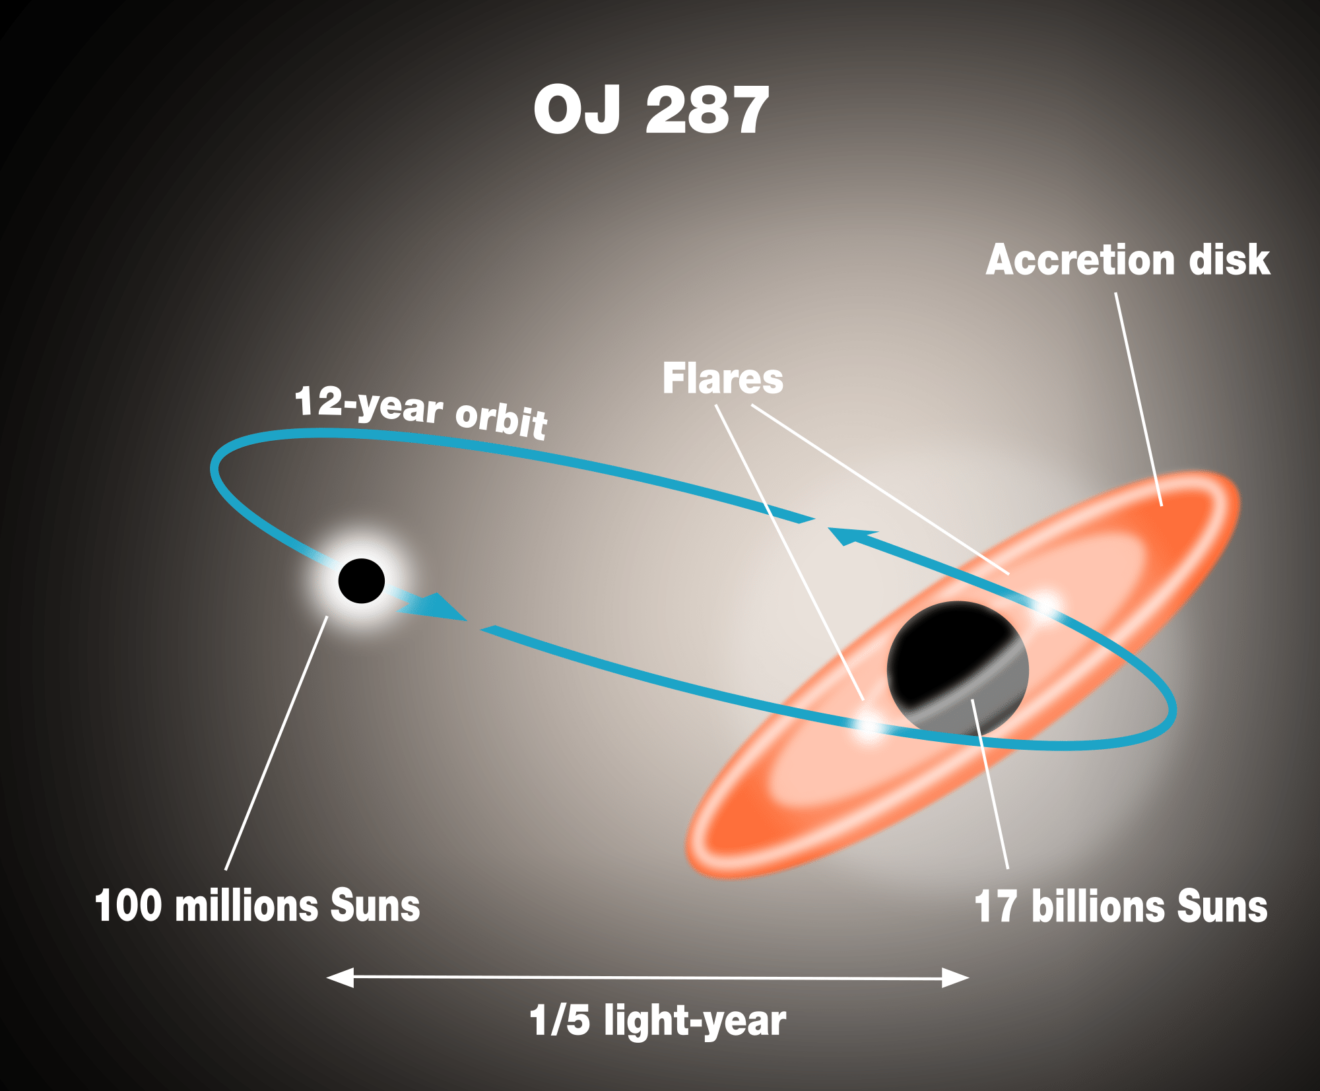 Het begeleidende superzware zwarte gat in quasar OJ 287 is voor het eerst apart gespot